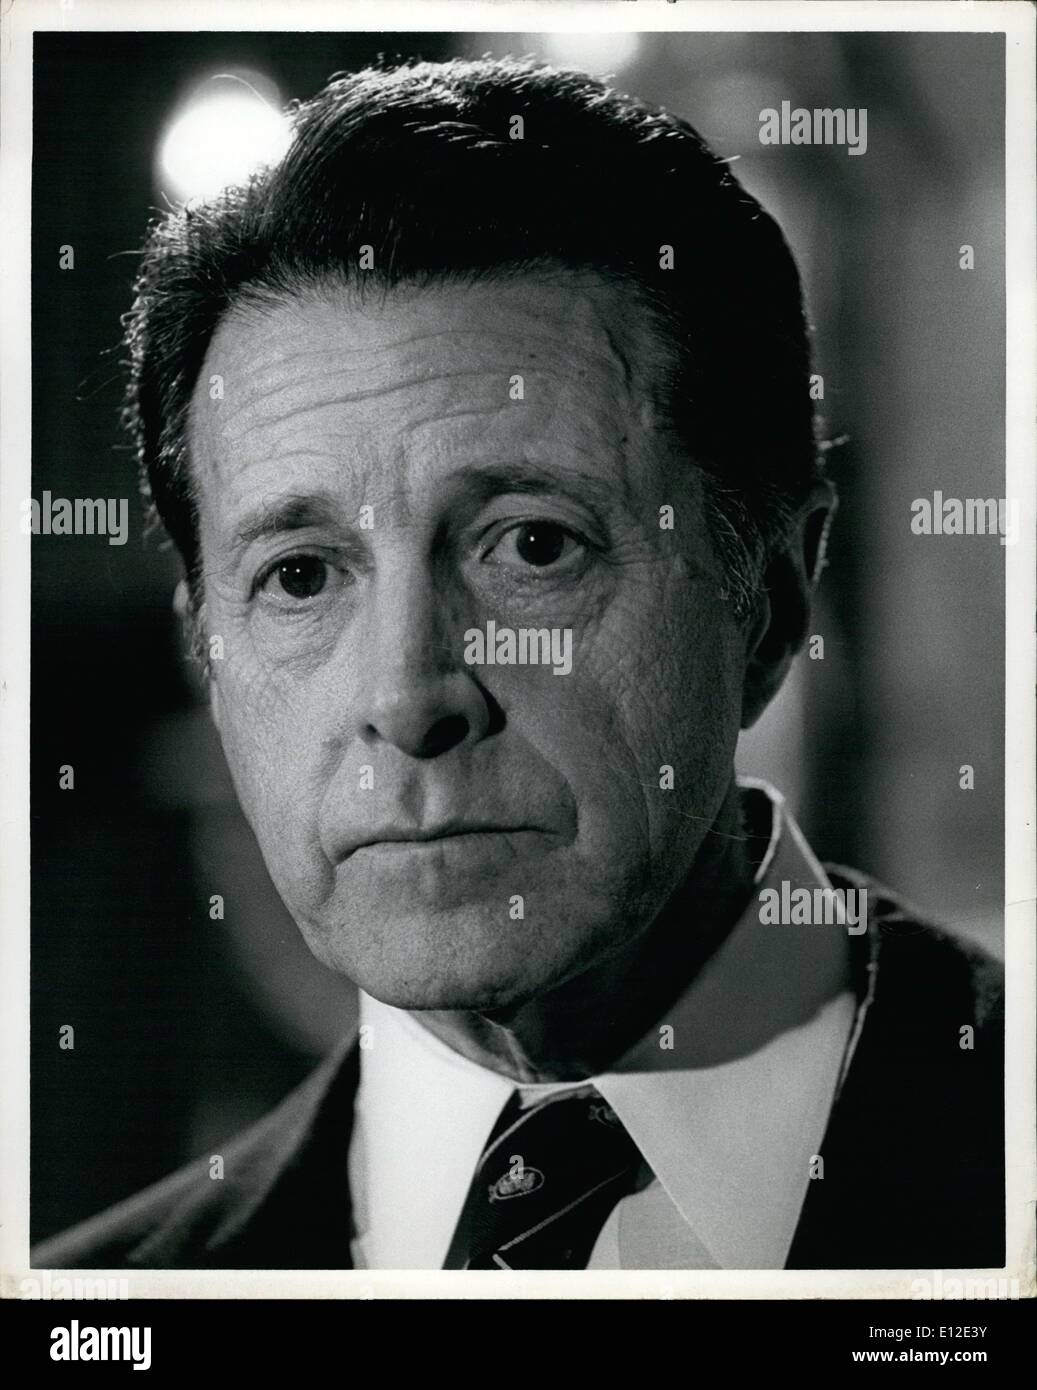 20 dicembre 2011 - Aprile 1982 New York City. Gli Stati Uniti il Segretario della Difesa Caspar Weinberger ha tenuto una conferenza stampa durante uno dei suoi numerosi viaggi a New York. OPS: Dr. Weinberger durante la sua conferenza stampa. Foto Stock